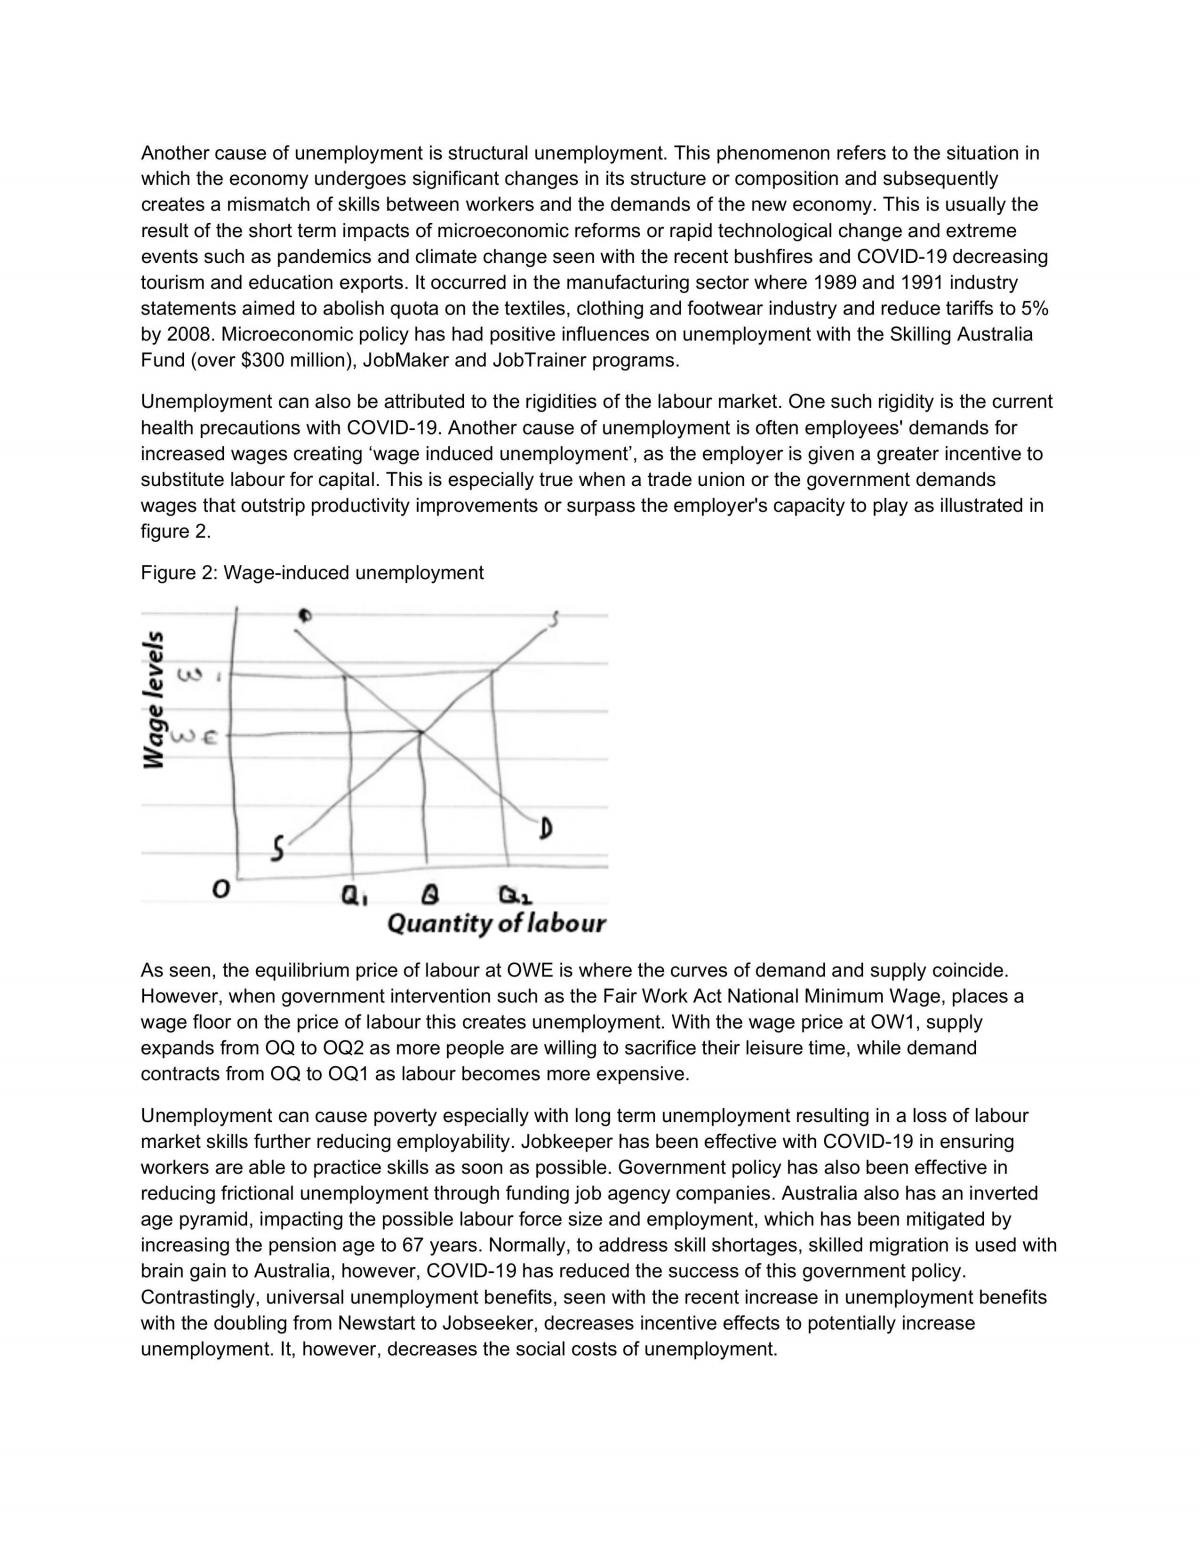 Economics set of essays HSC - Page 45